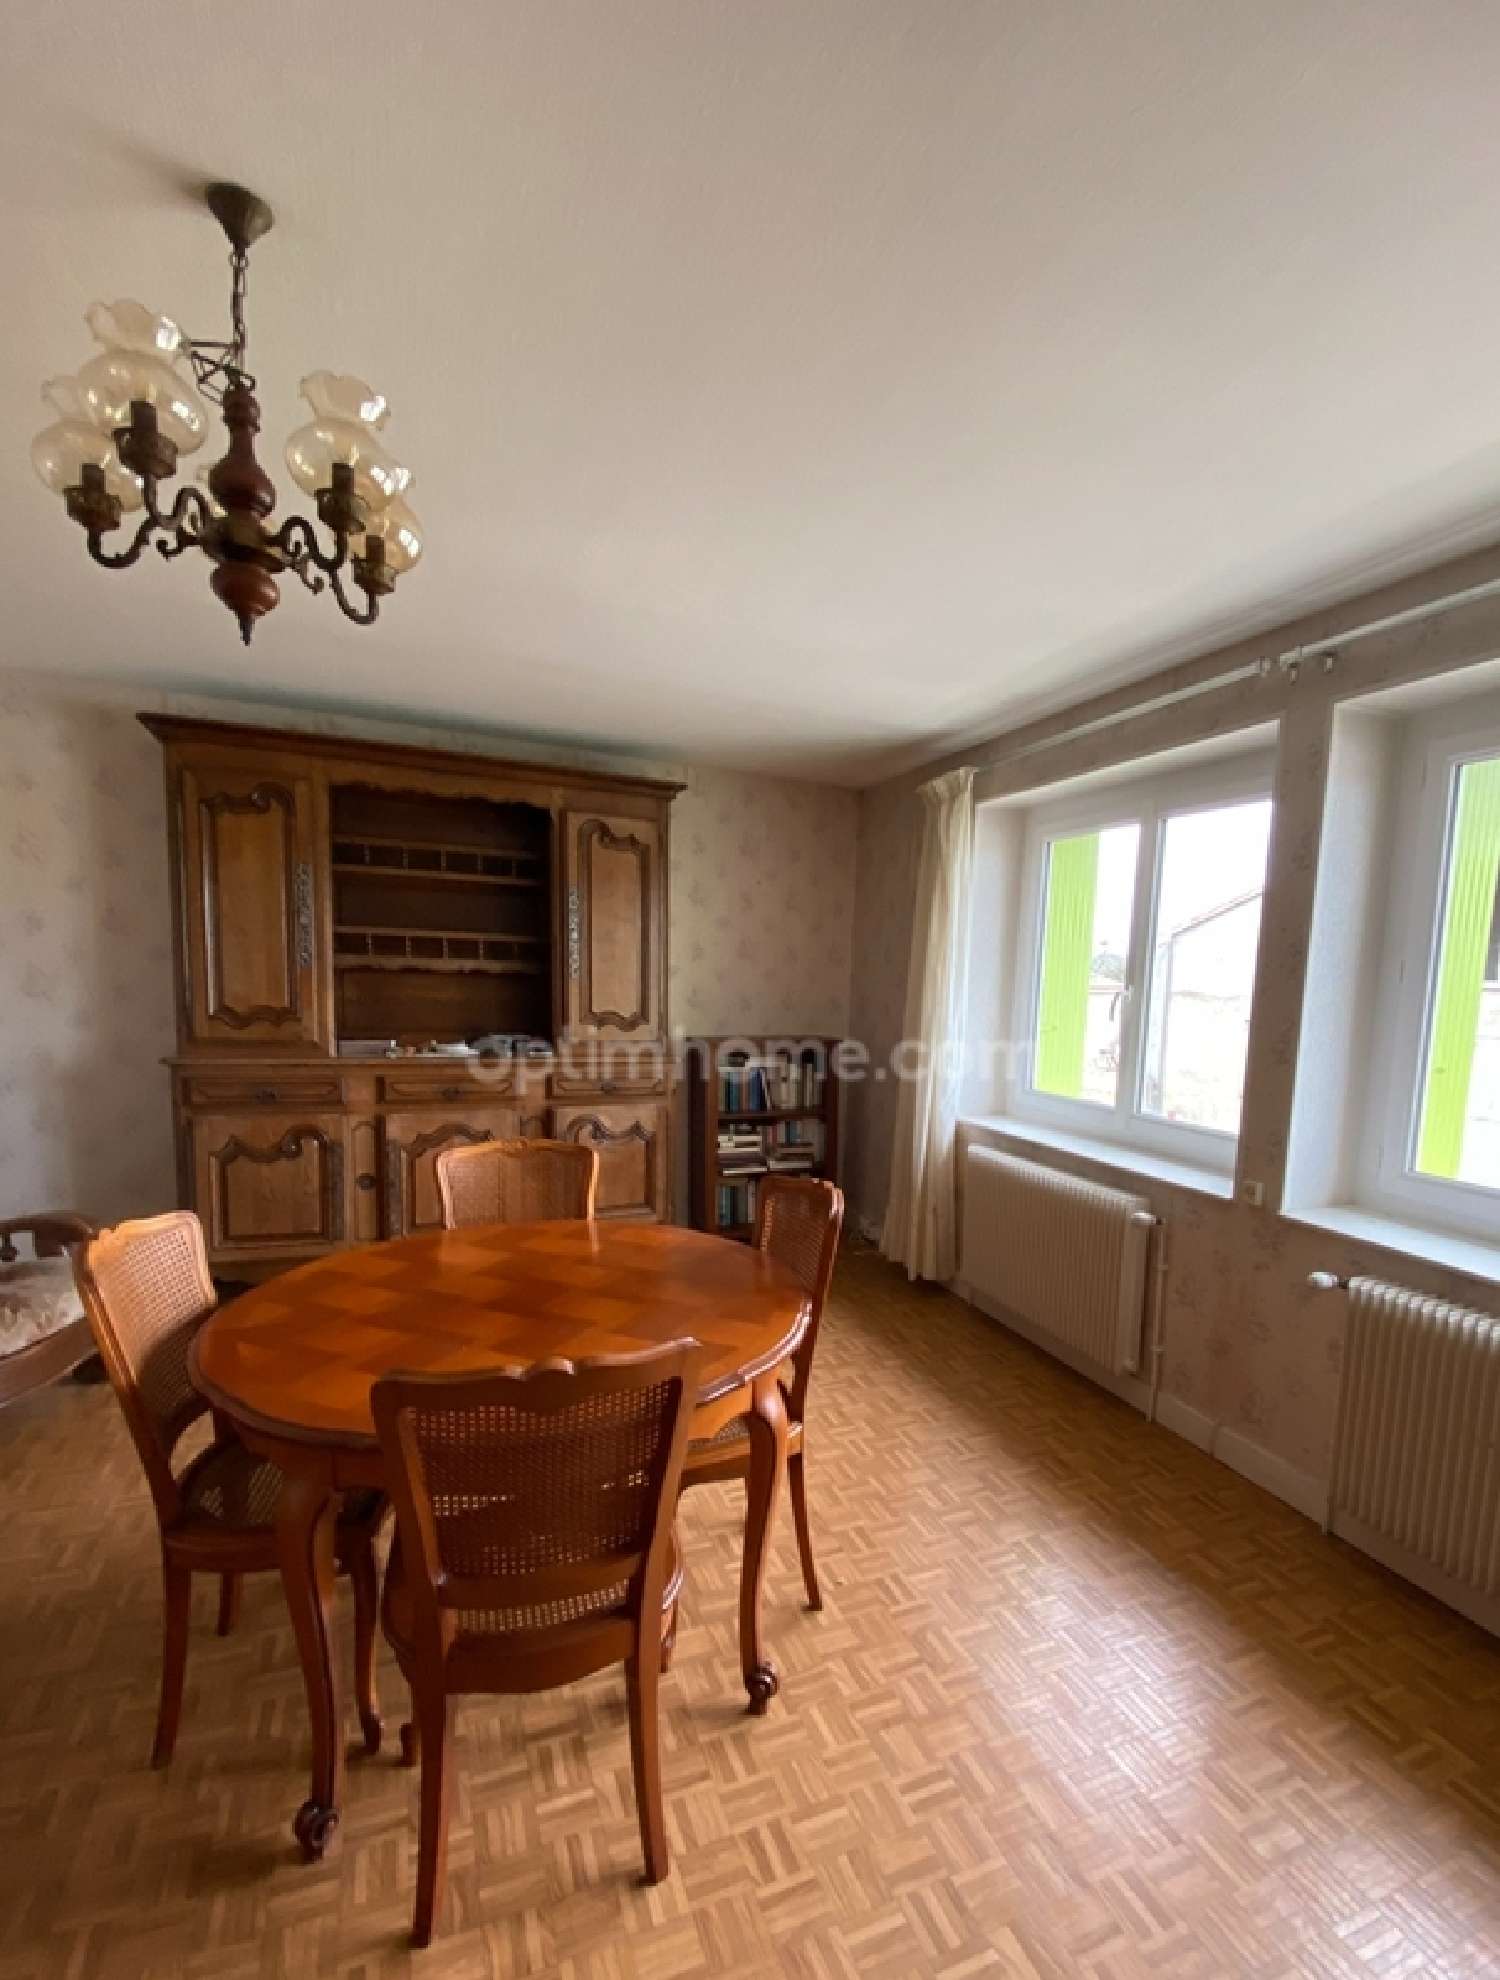  à vendre maison Mornac Charente 6